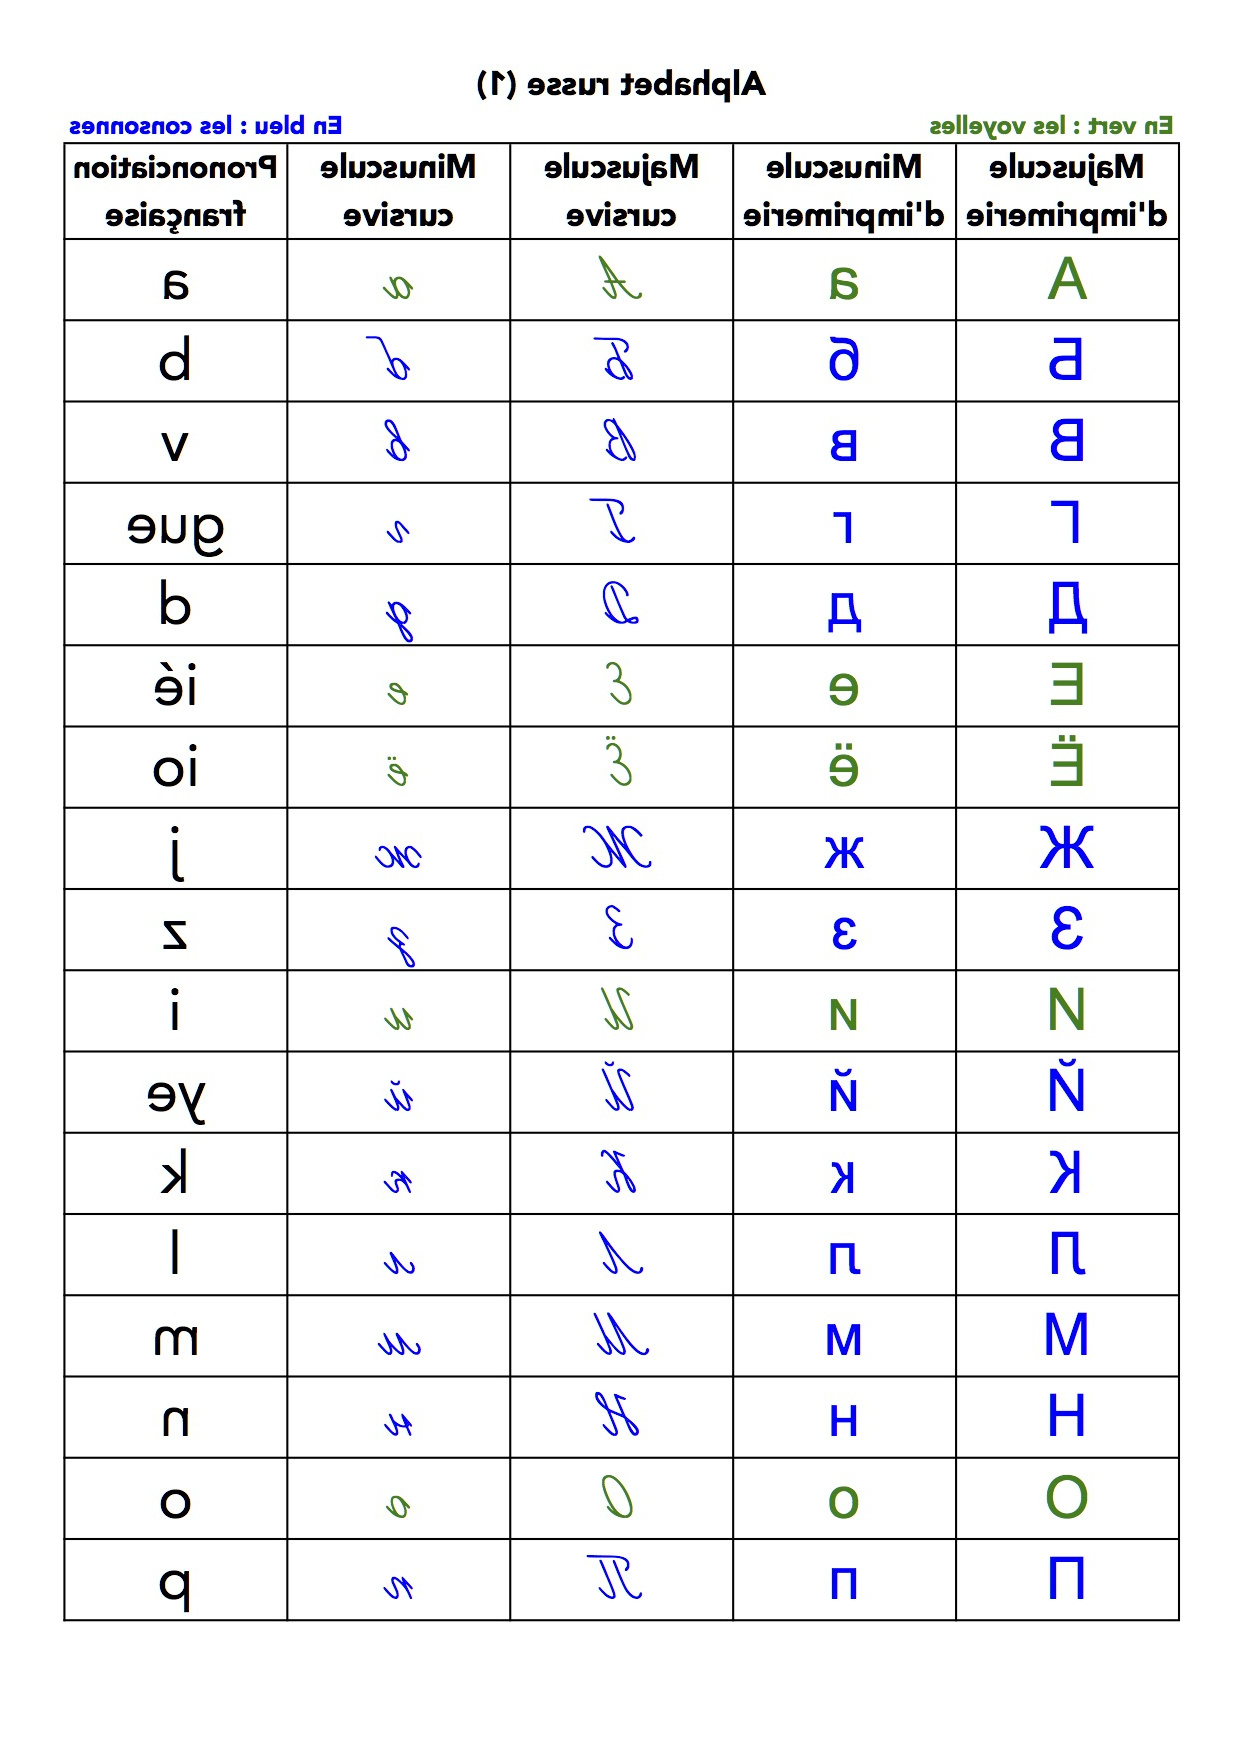 lalphabet russe tout alphabet francais ecriture